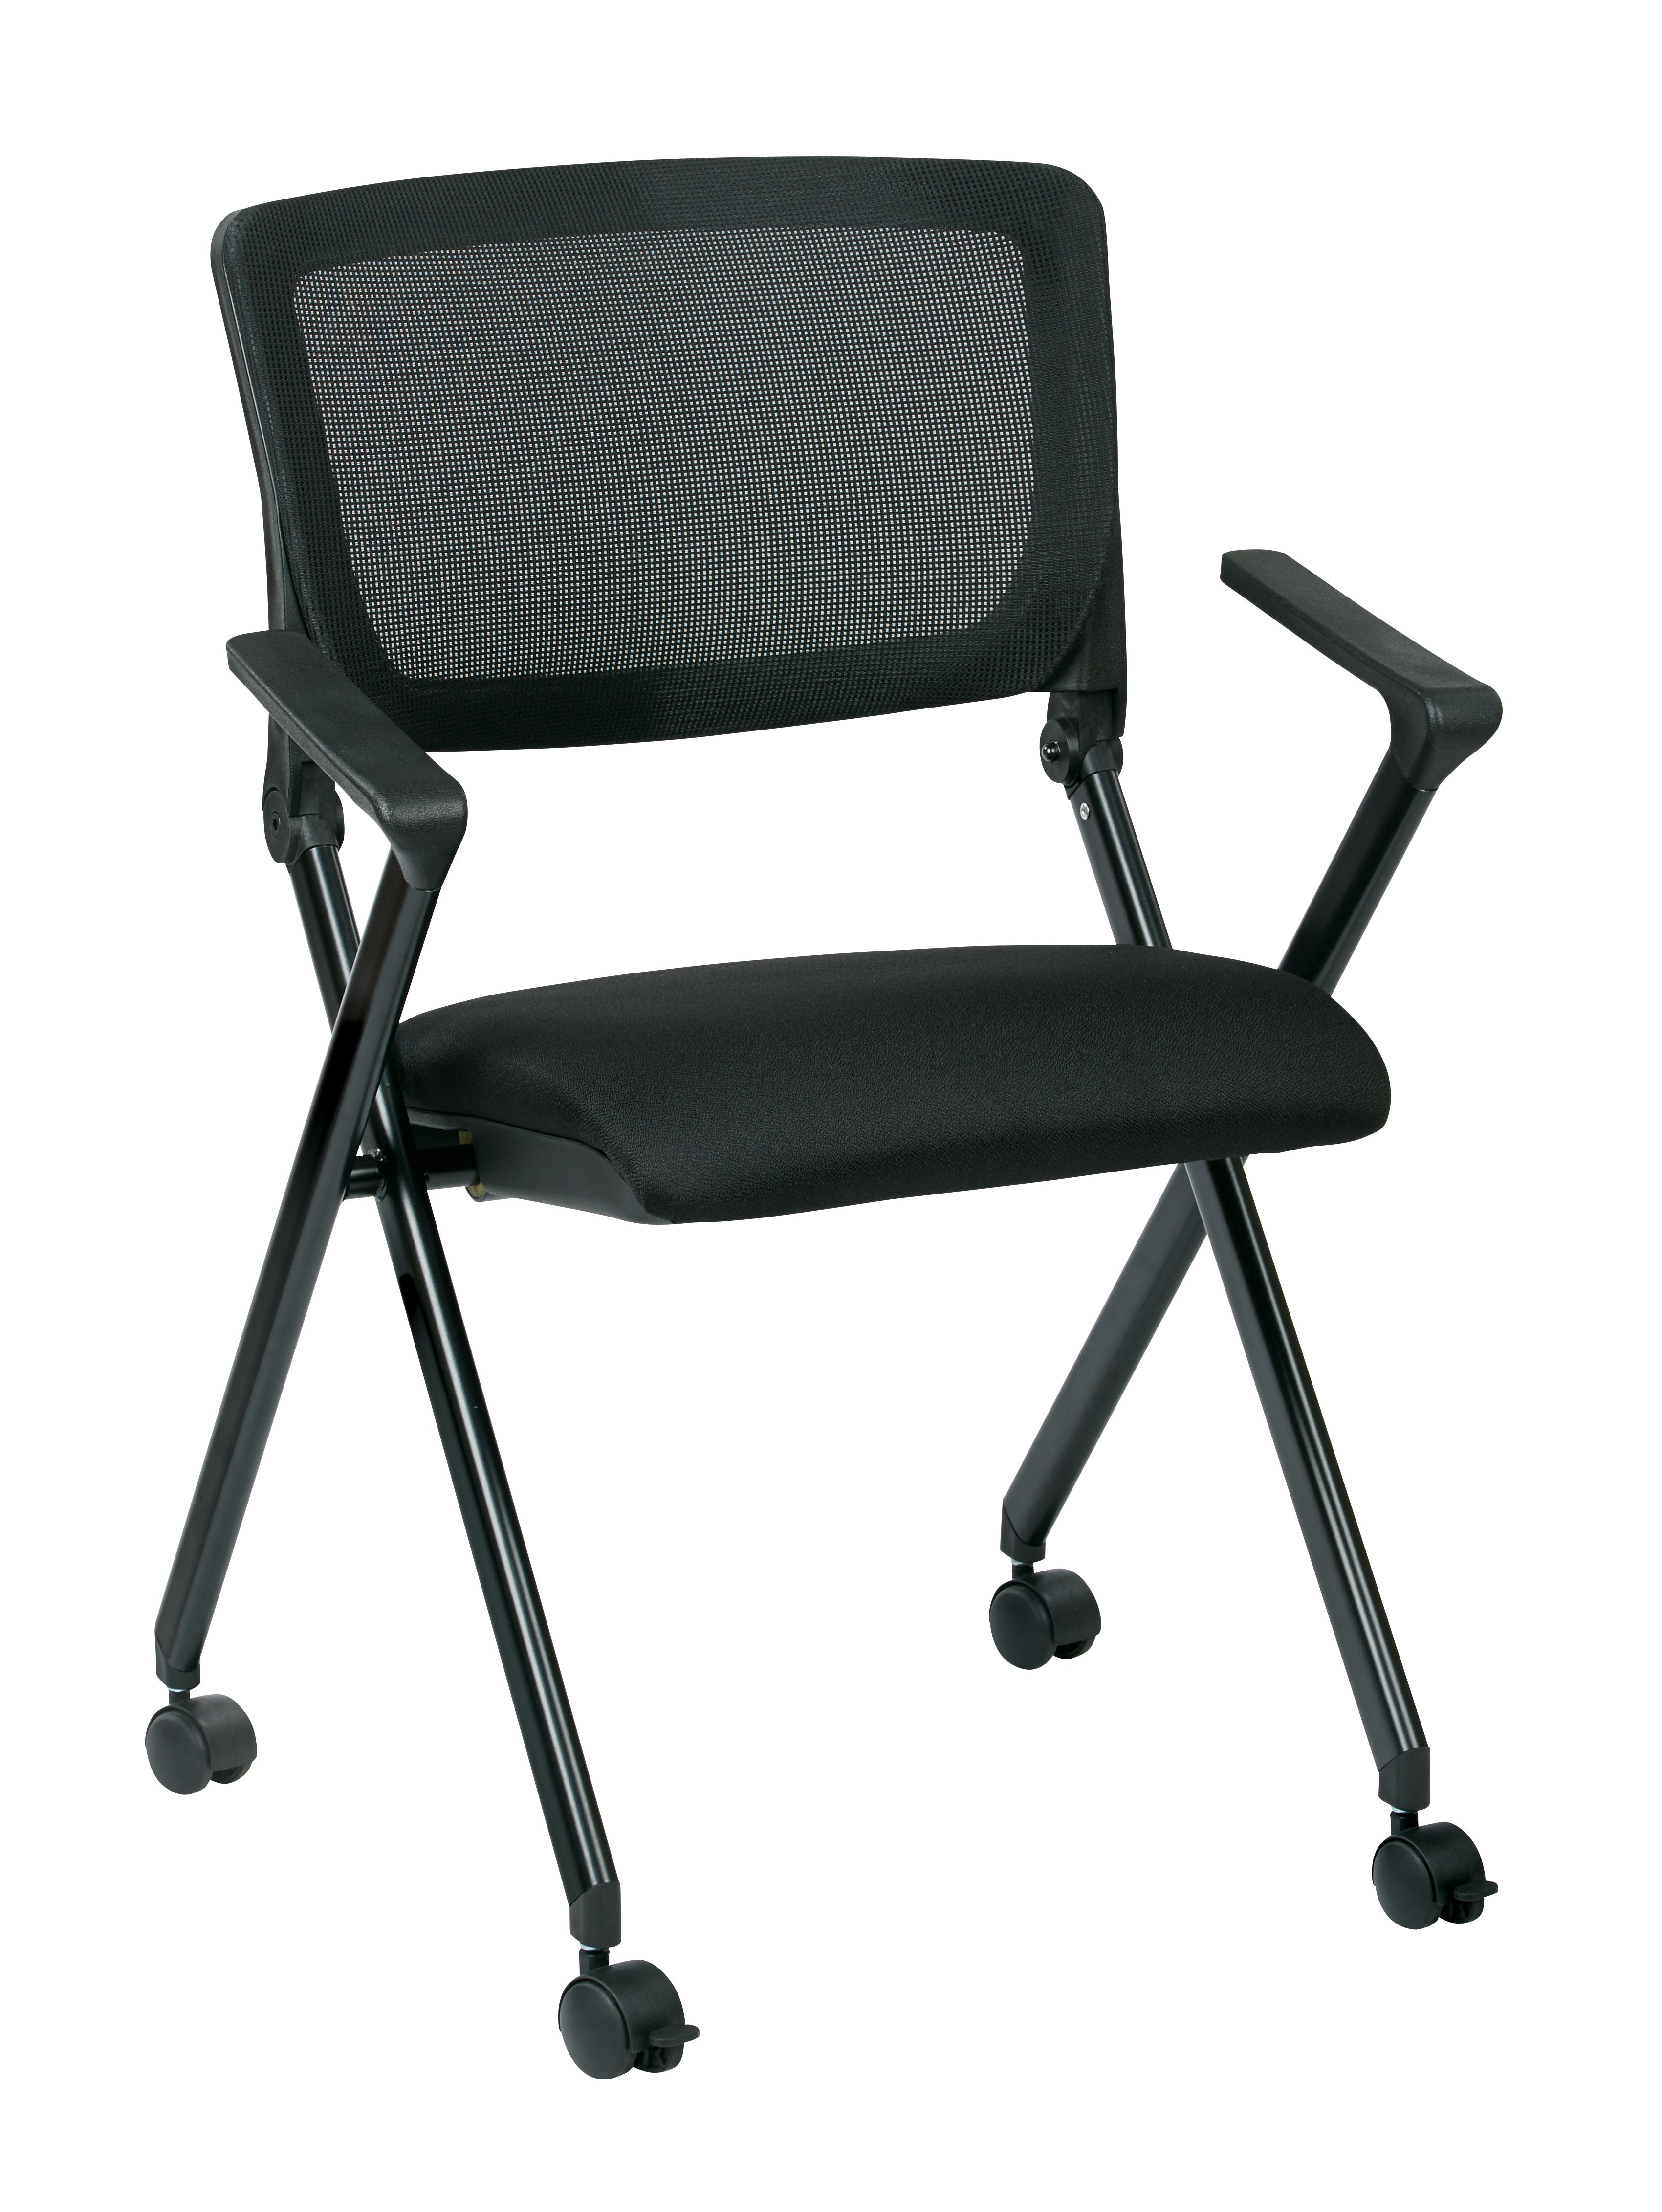 FC8483 - Nesting/Folding Chair w/ Breathable Mesh Back & Black Frame (2-pack)